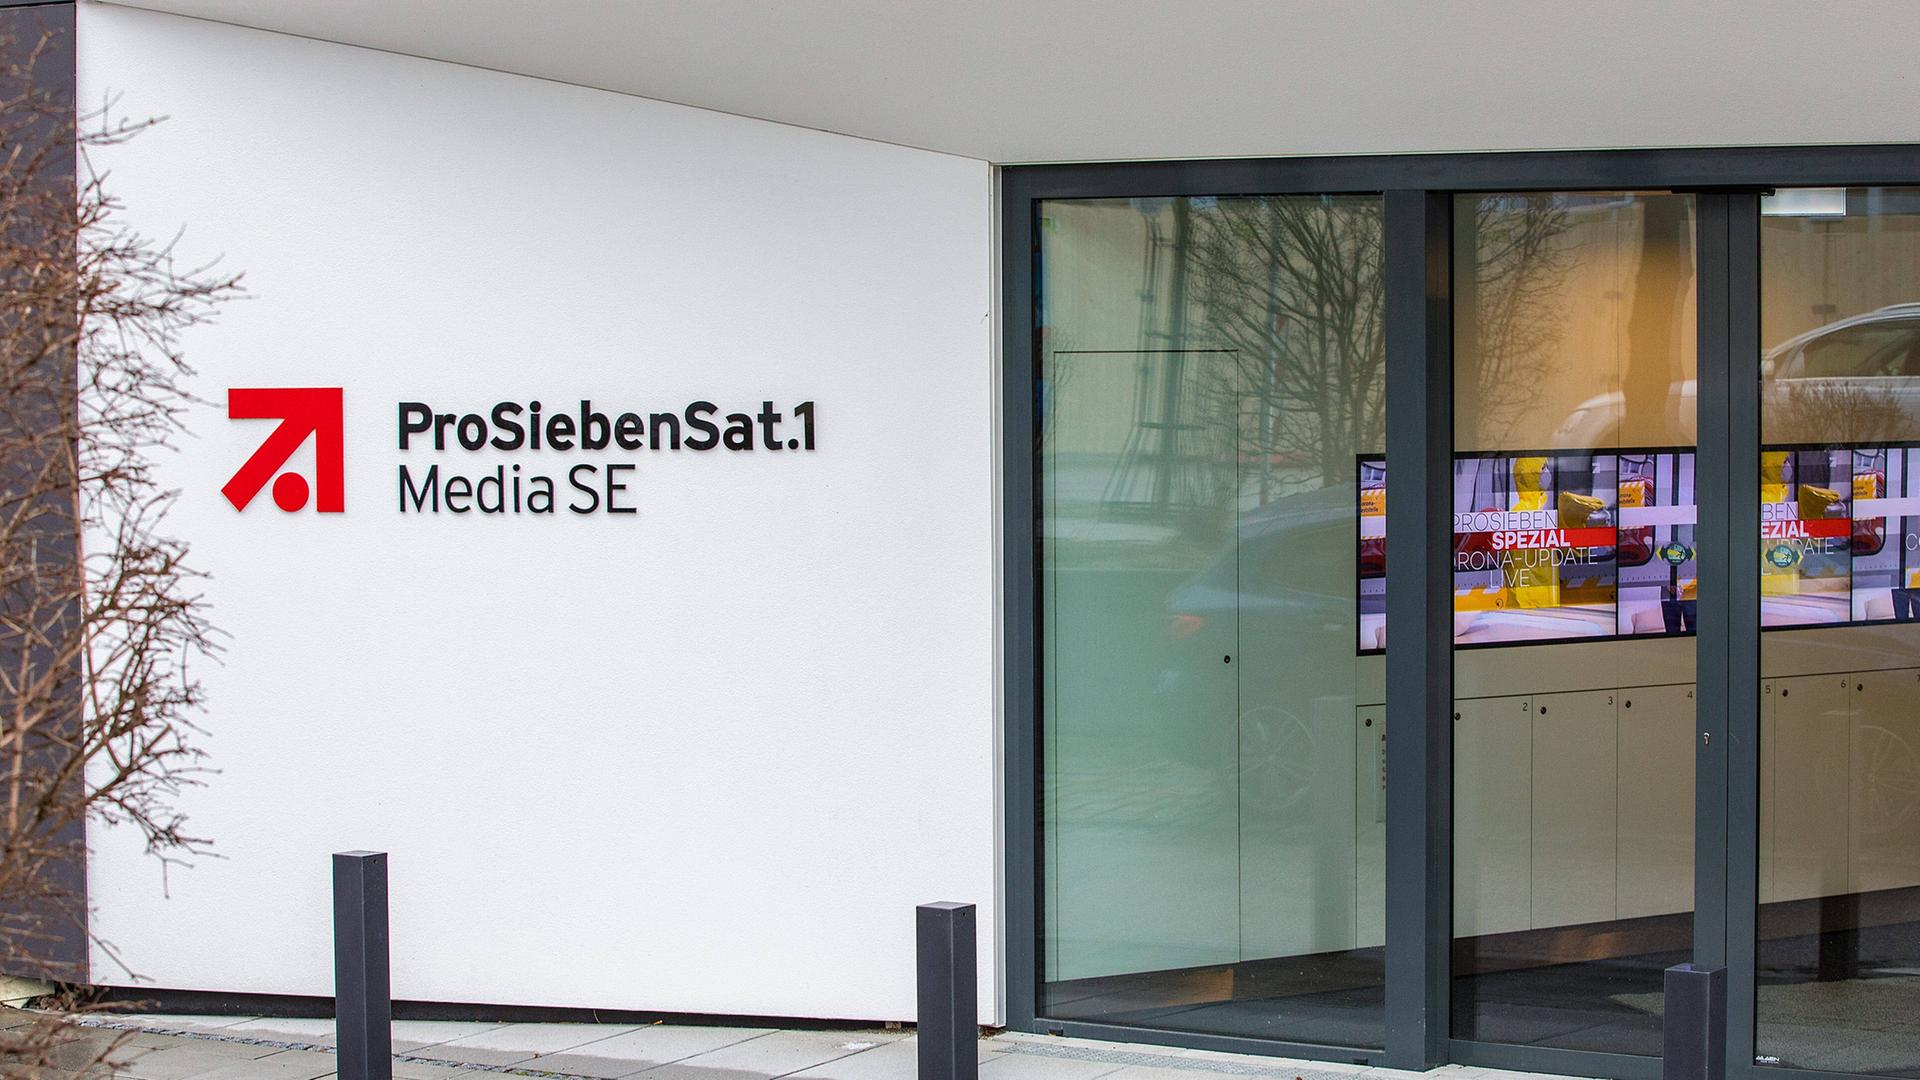 Aussenansicht vom Haupteingang des Medienunternehmens ProSiebenSat1 im Medienpark München-Unterföhring 